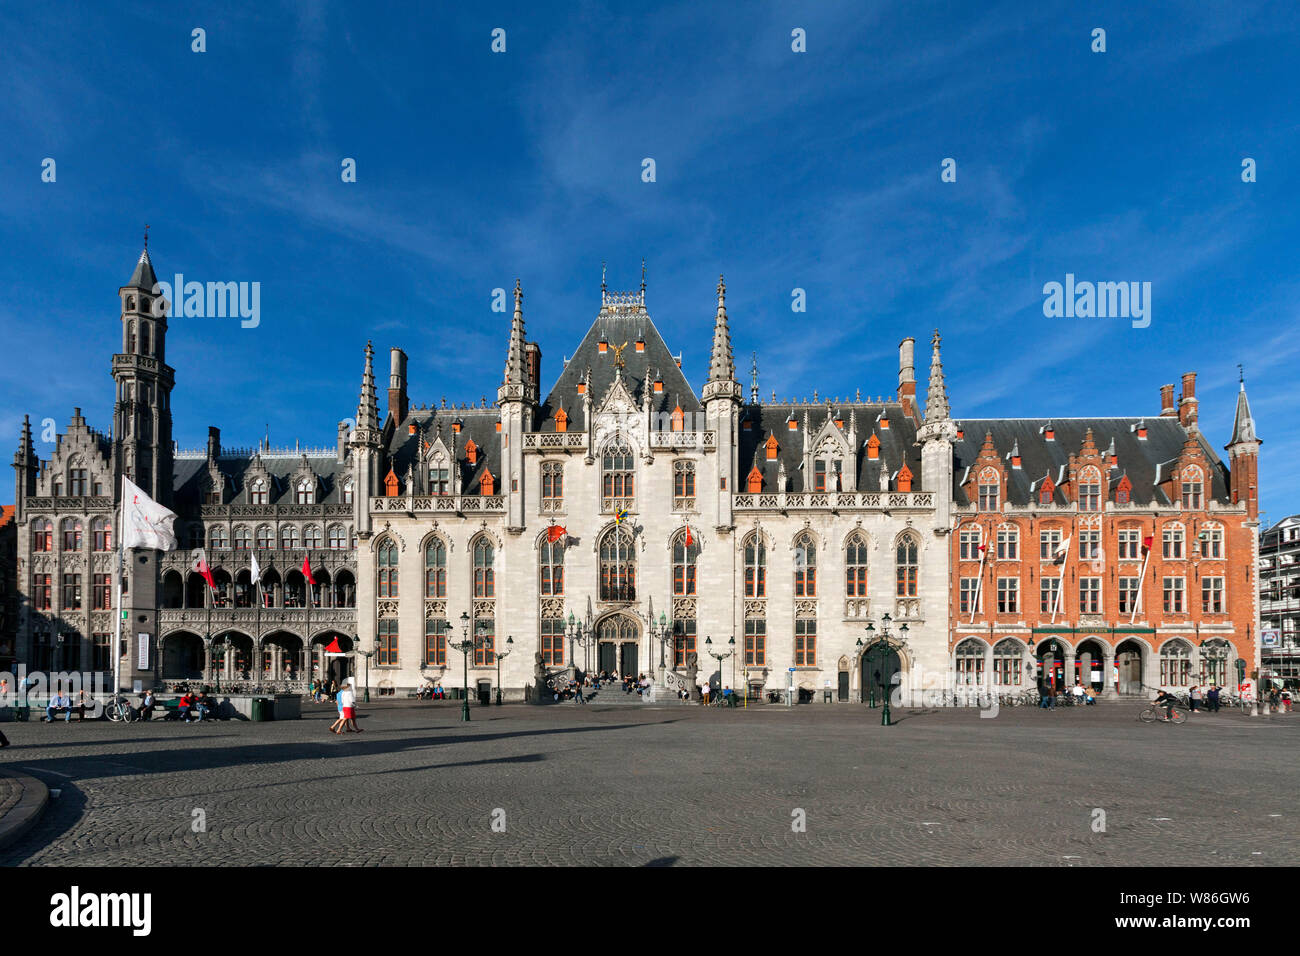 Belgio, Bruges: elaborata facciata del Palazzo Provinciale in stile neo-gotico nella piazza principale Markt ('Mercato Square'). Il centro storico di Br Foto Stock